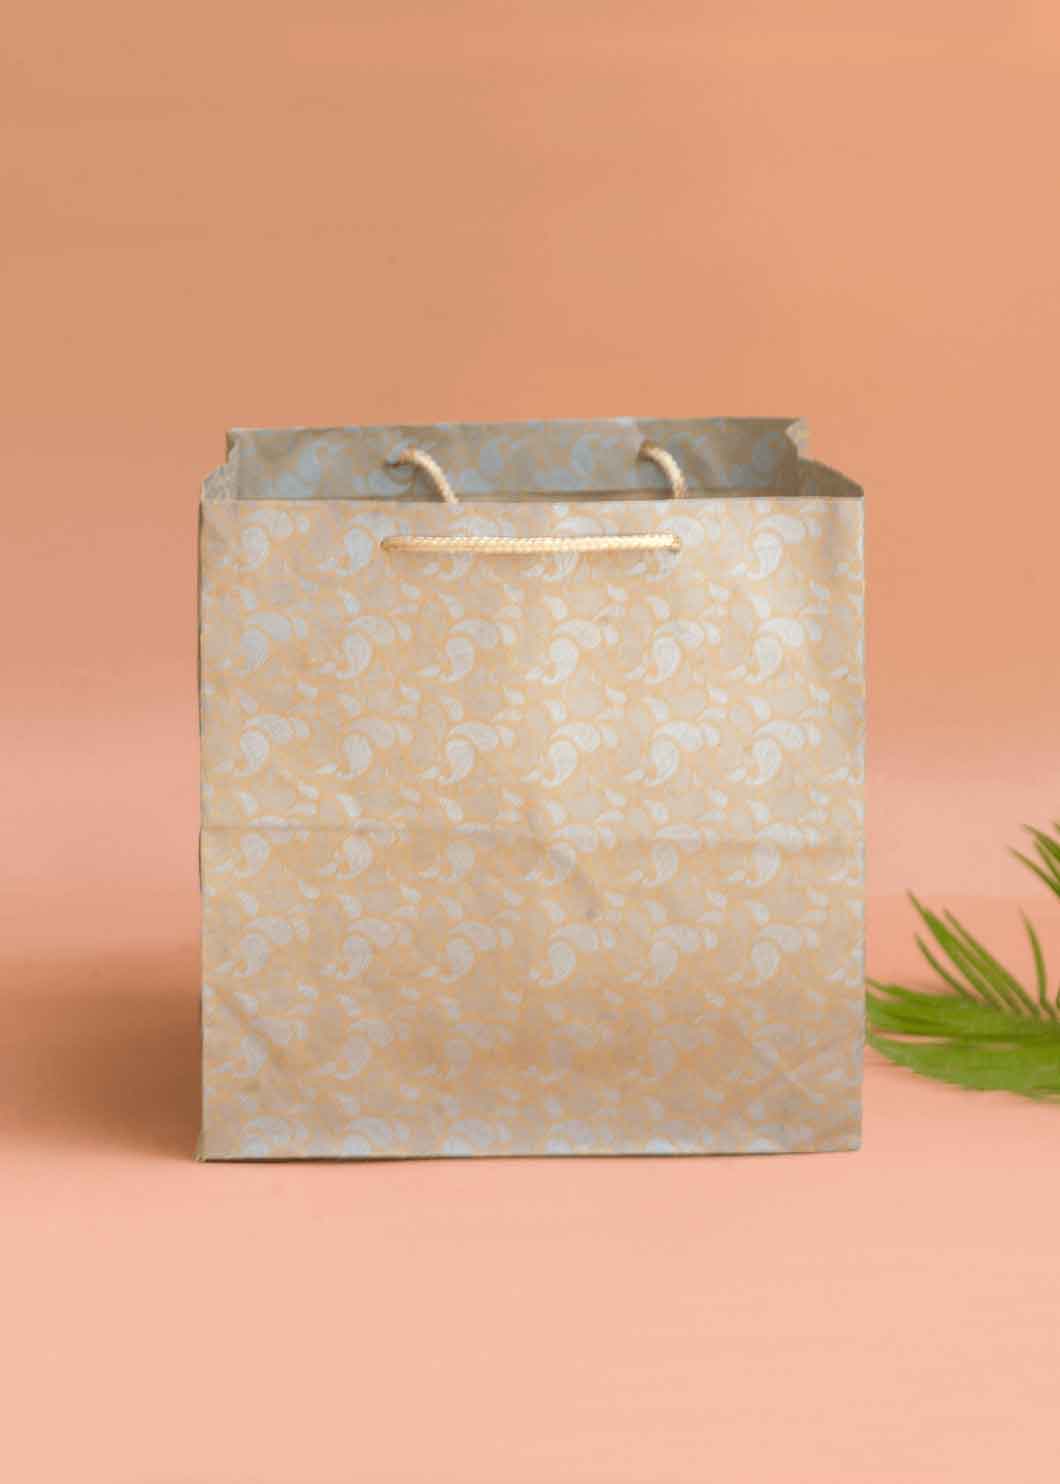 Craft Paper Bag - Mandala Pattern Design Square Paper Bag For Multupupose Packaging